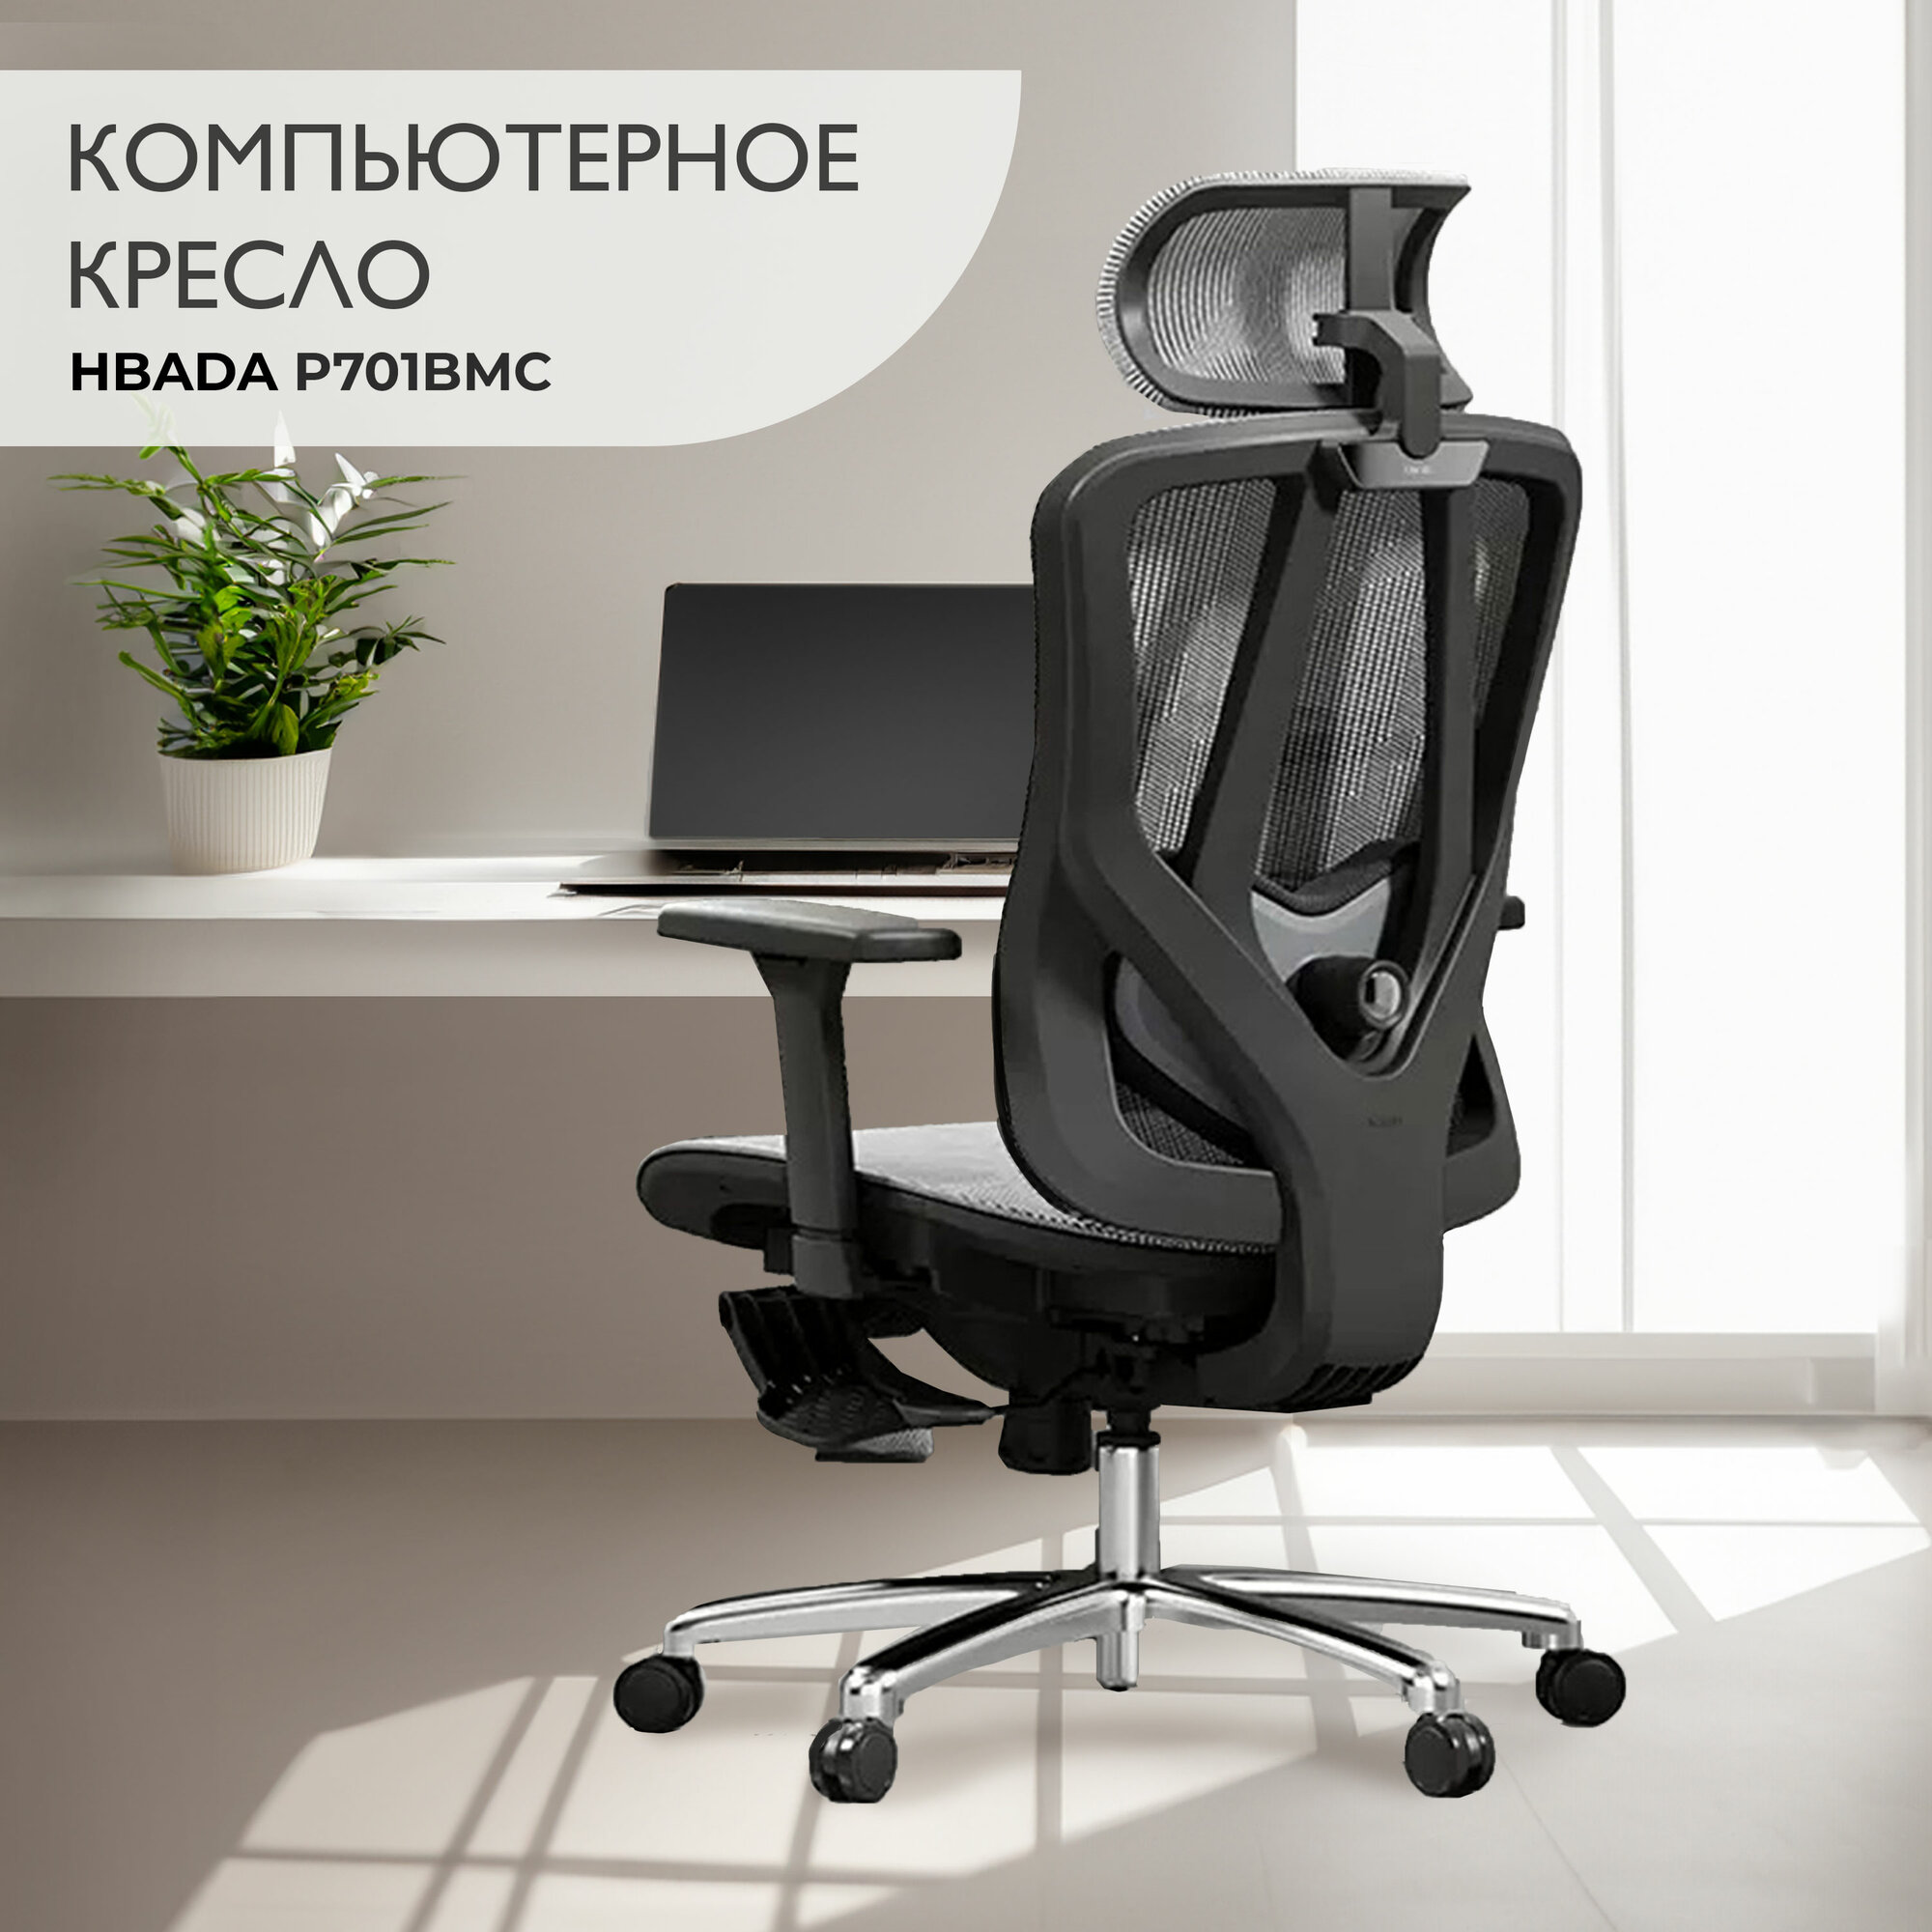 Компьютерное кресло Hbada P701BMC